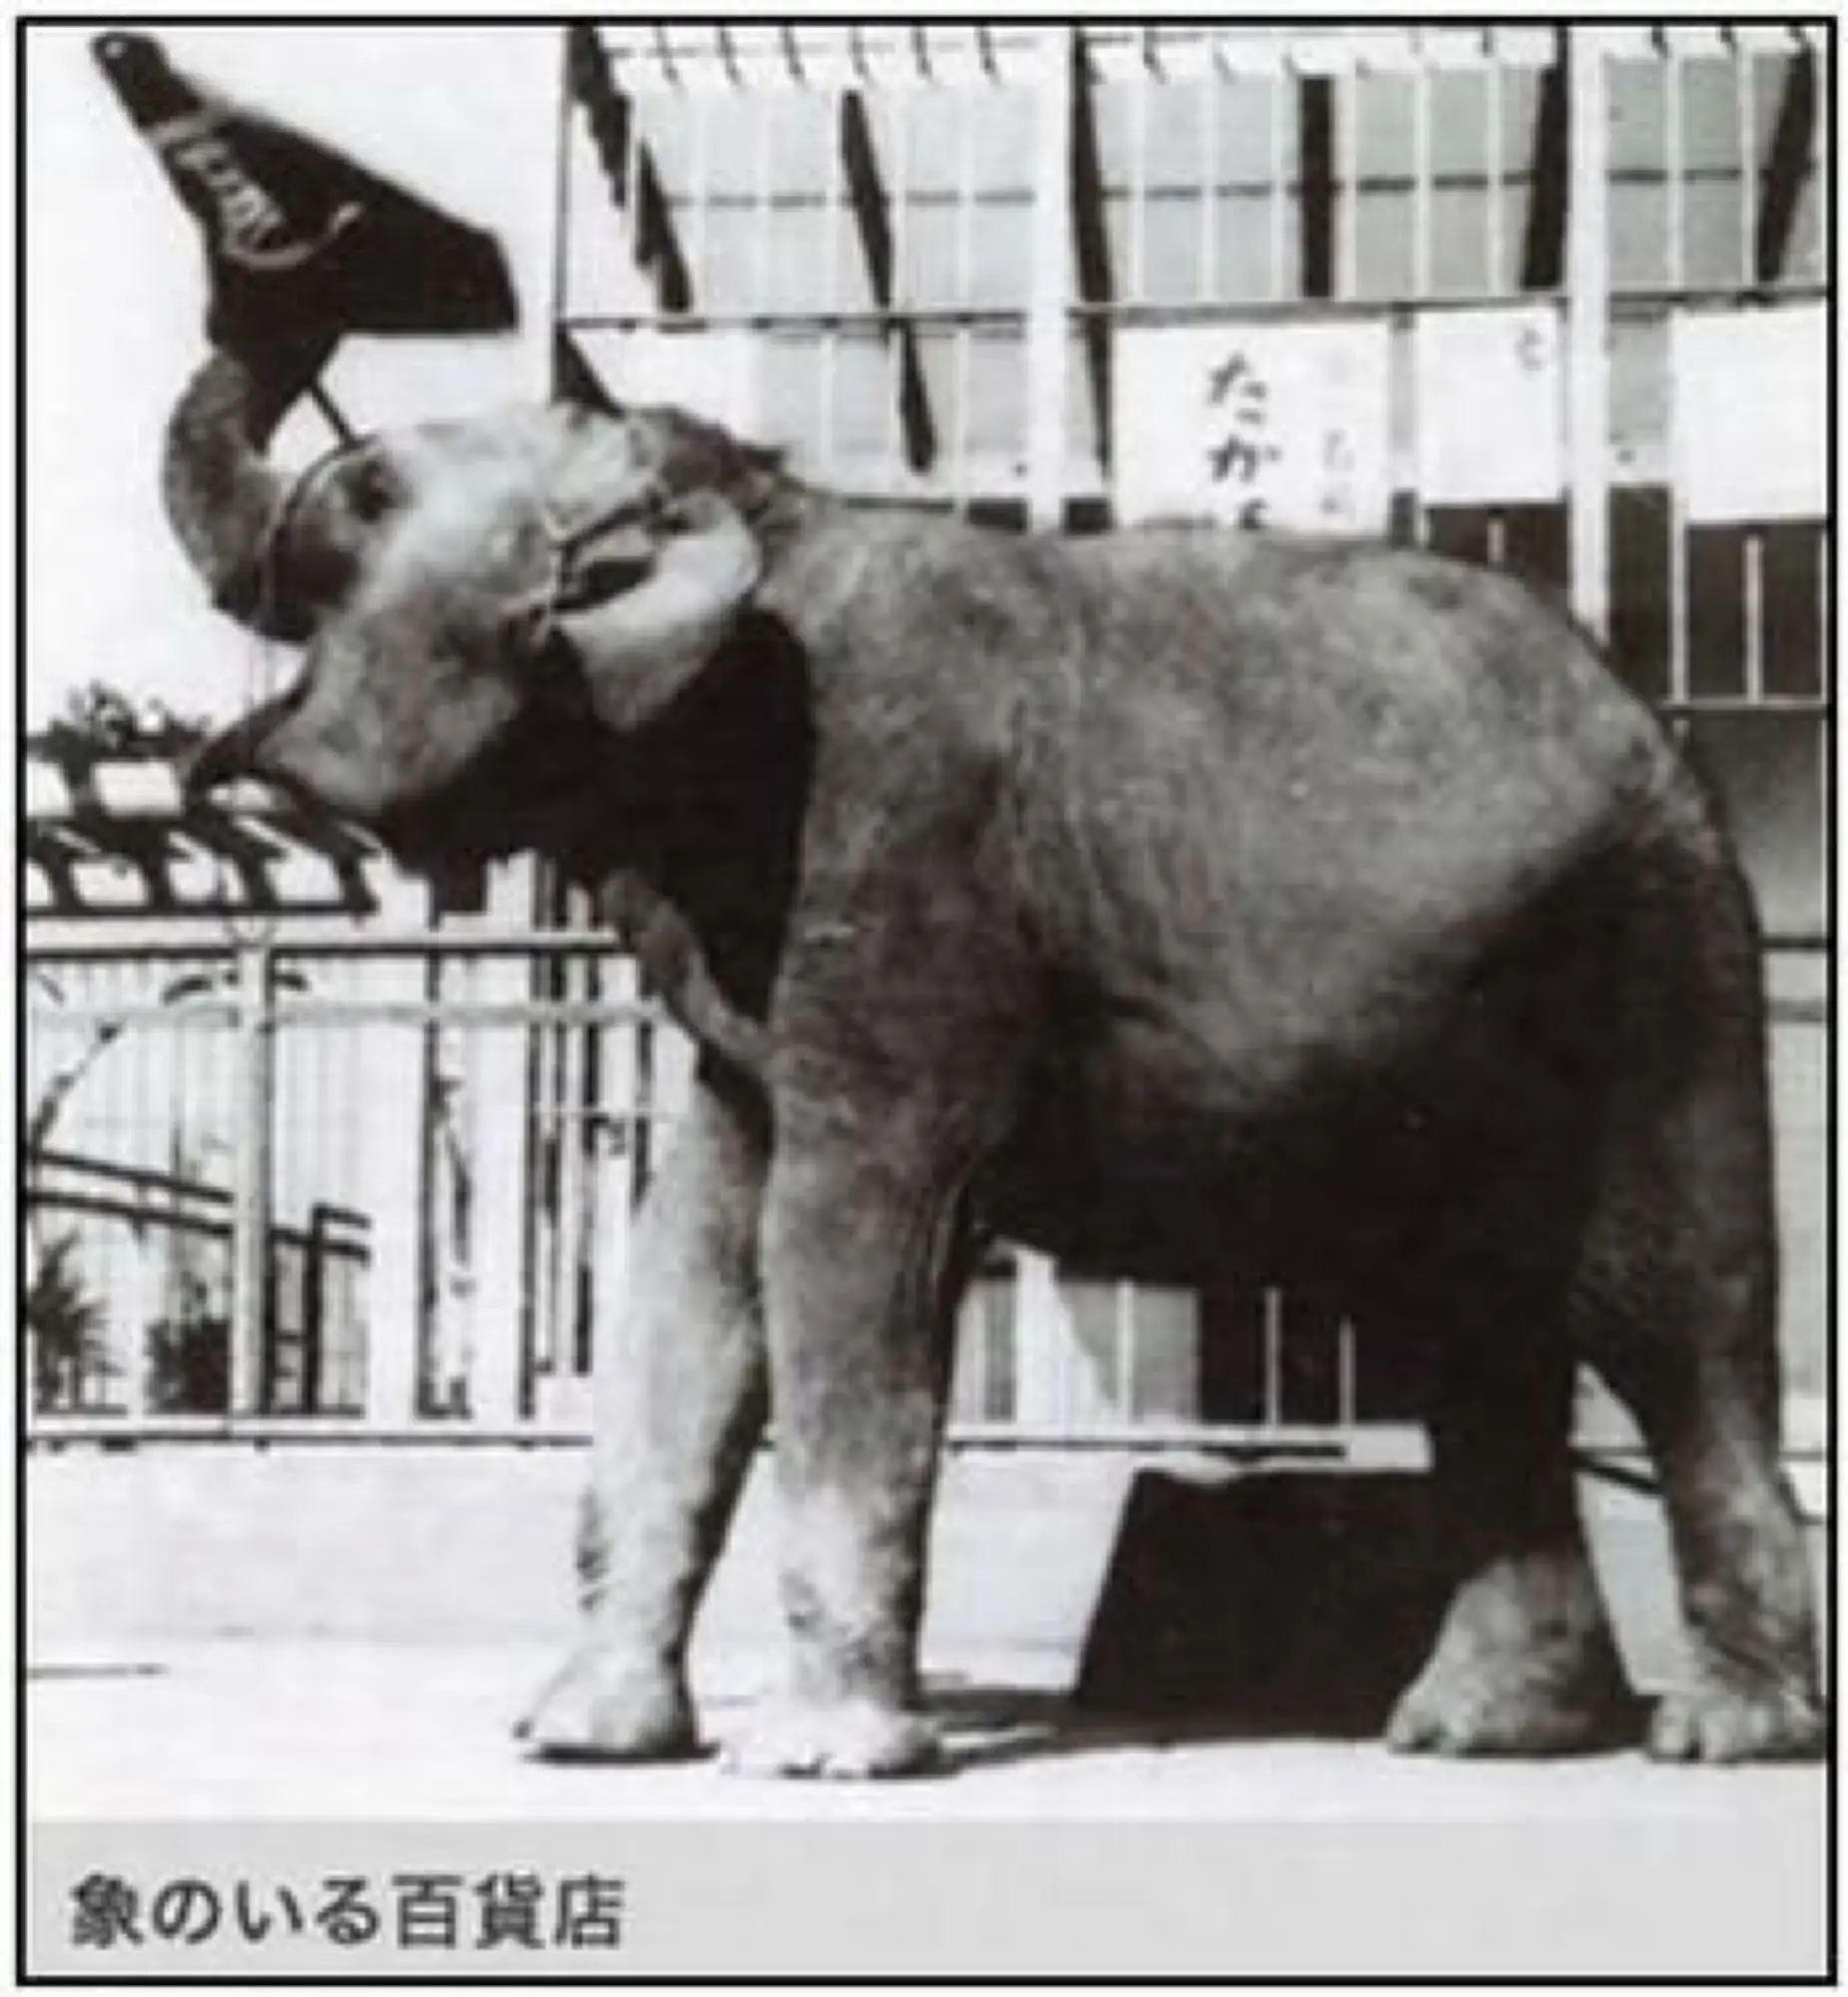 早在1950年，高岛屋即因大象和泰国结缘（图片来源：Tokyo Chuo City Tourism Association）